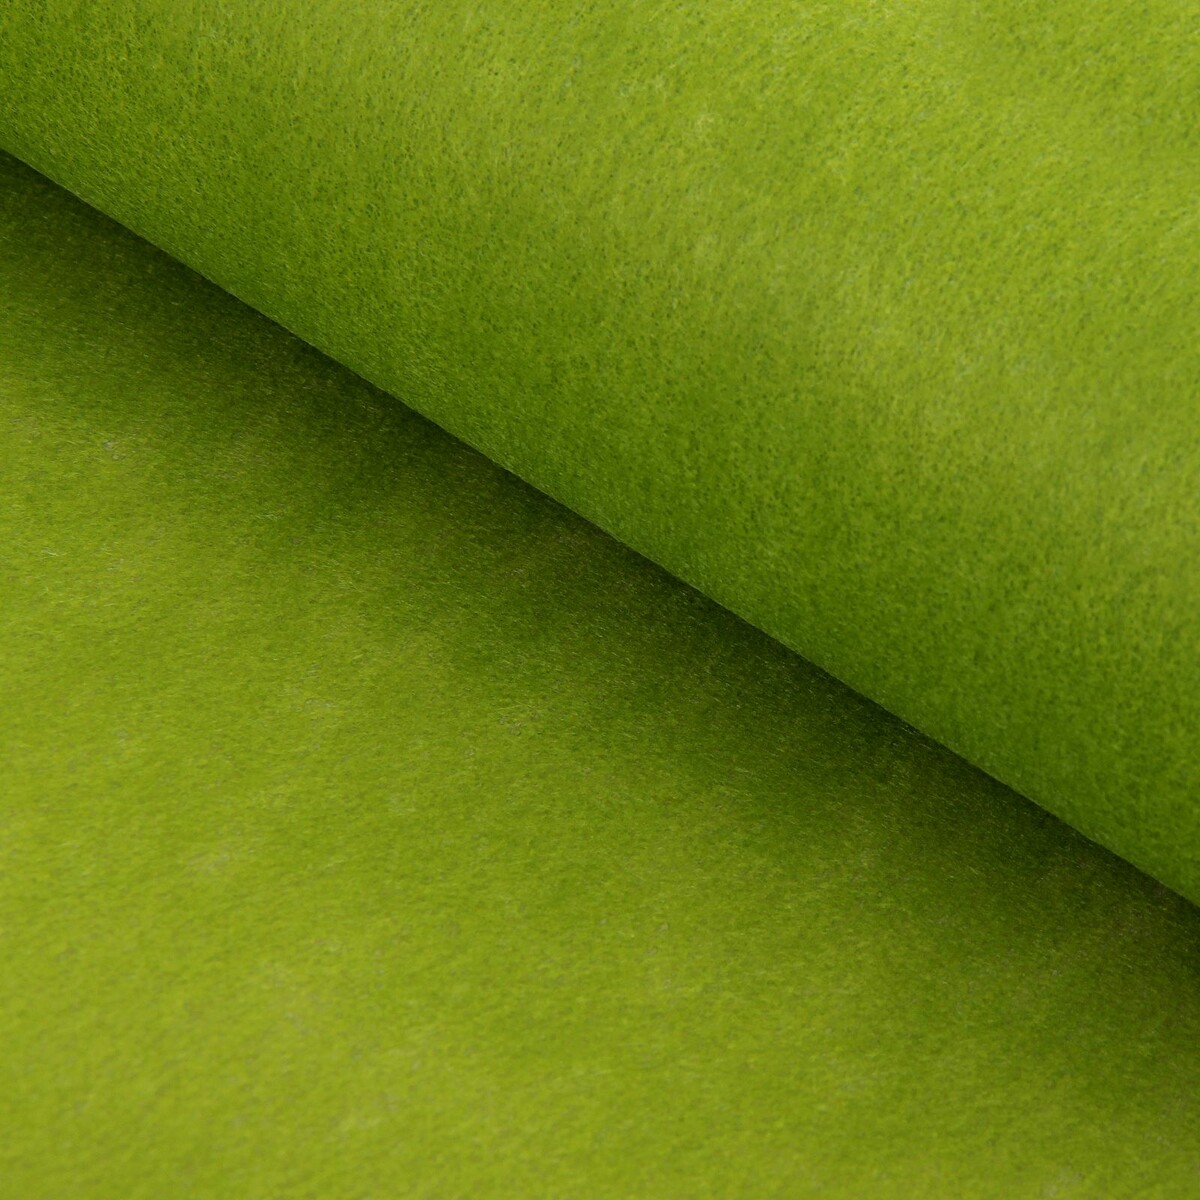 Фетр для упаковок и поделок, однотонный, оливковый, двусторонний, зеленый, рулон 1шт., 50 см x 15 м карнавальные очки дракончик зеленый фетр